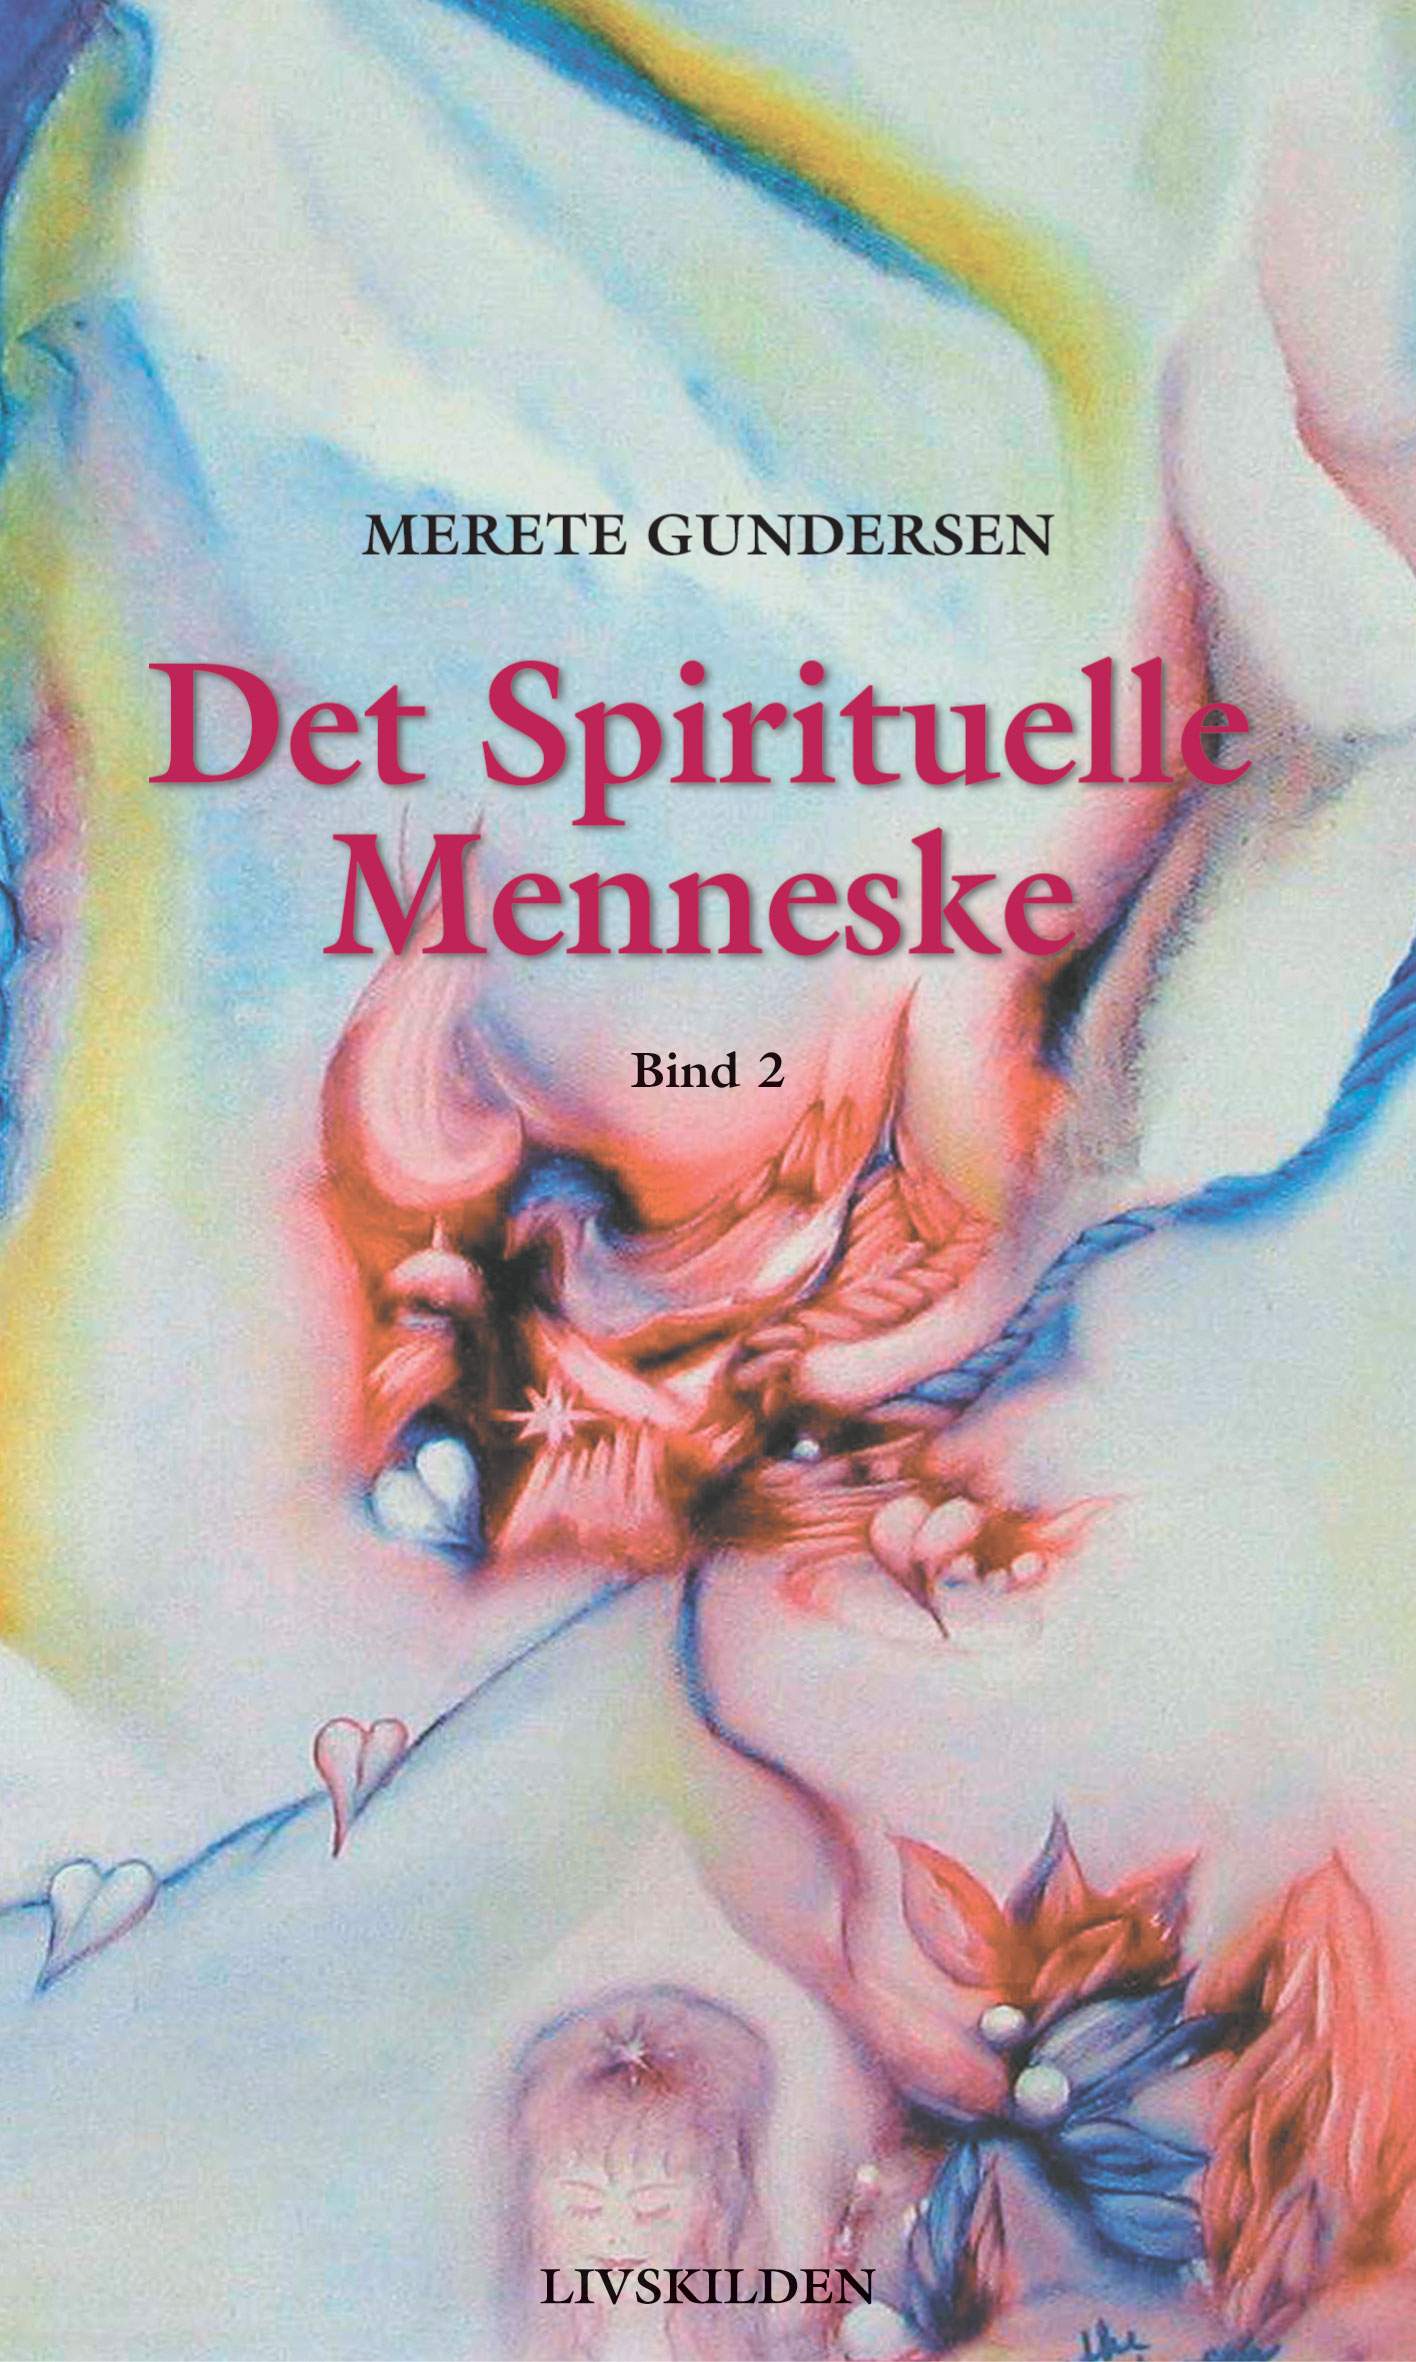 Det Spirituelle Menneske 2 af forfatter Merete Gundersen